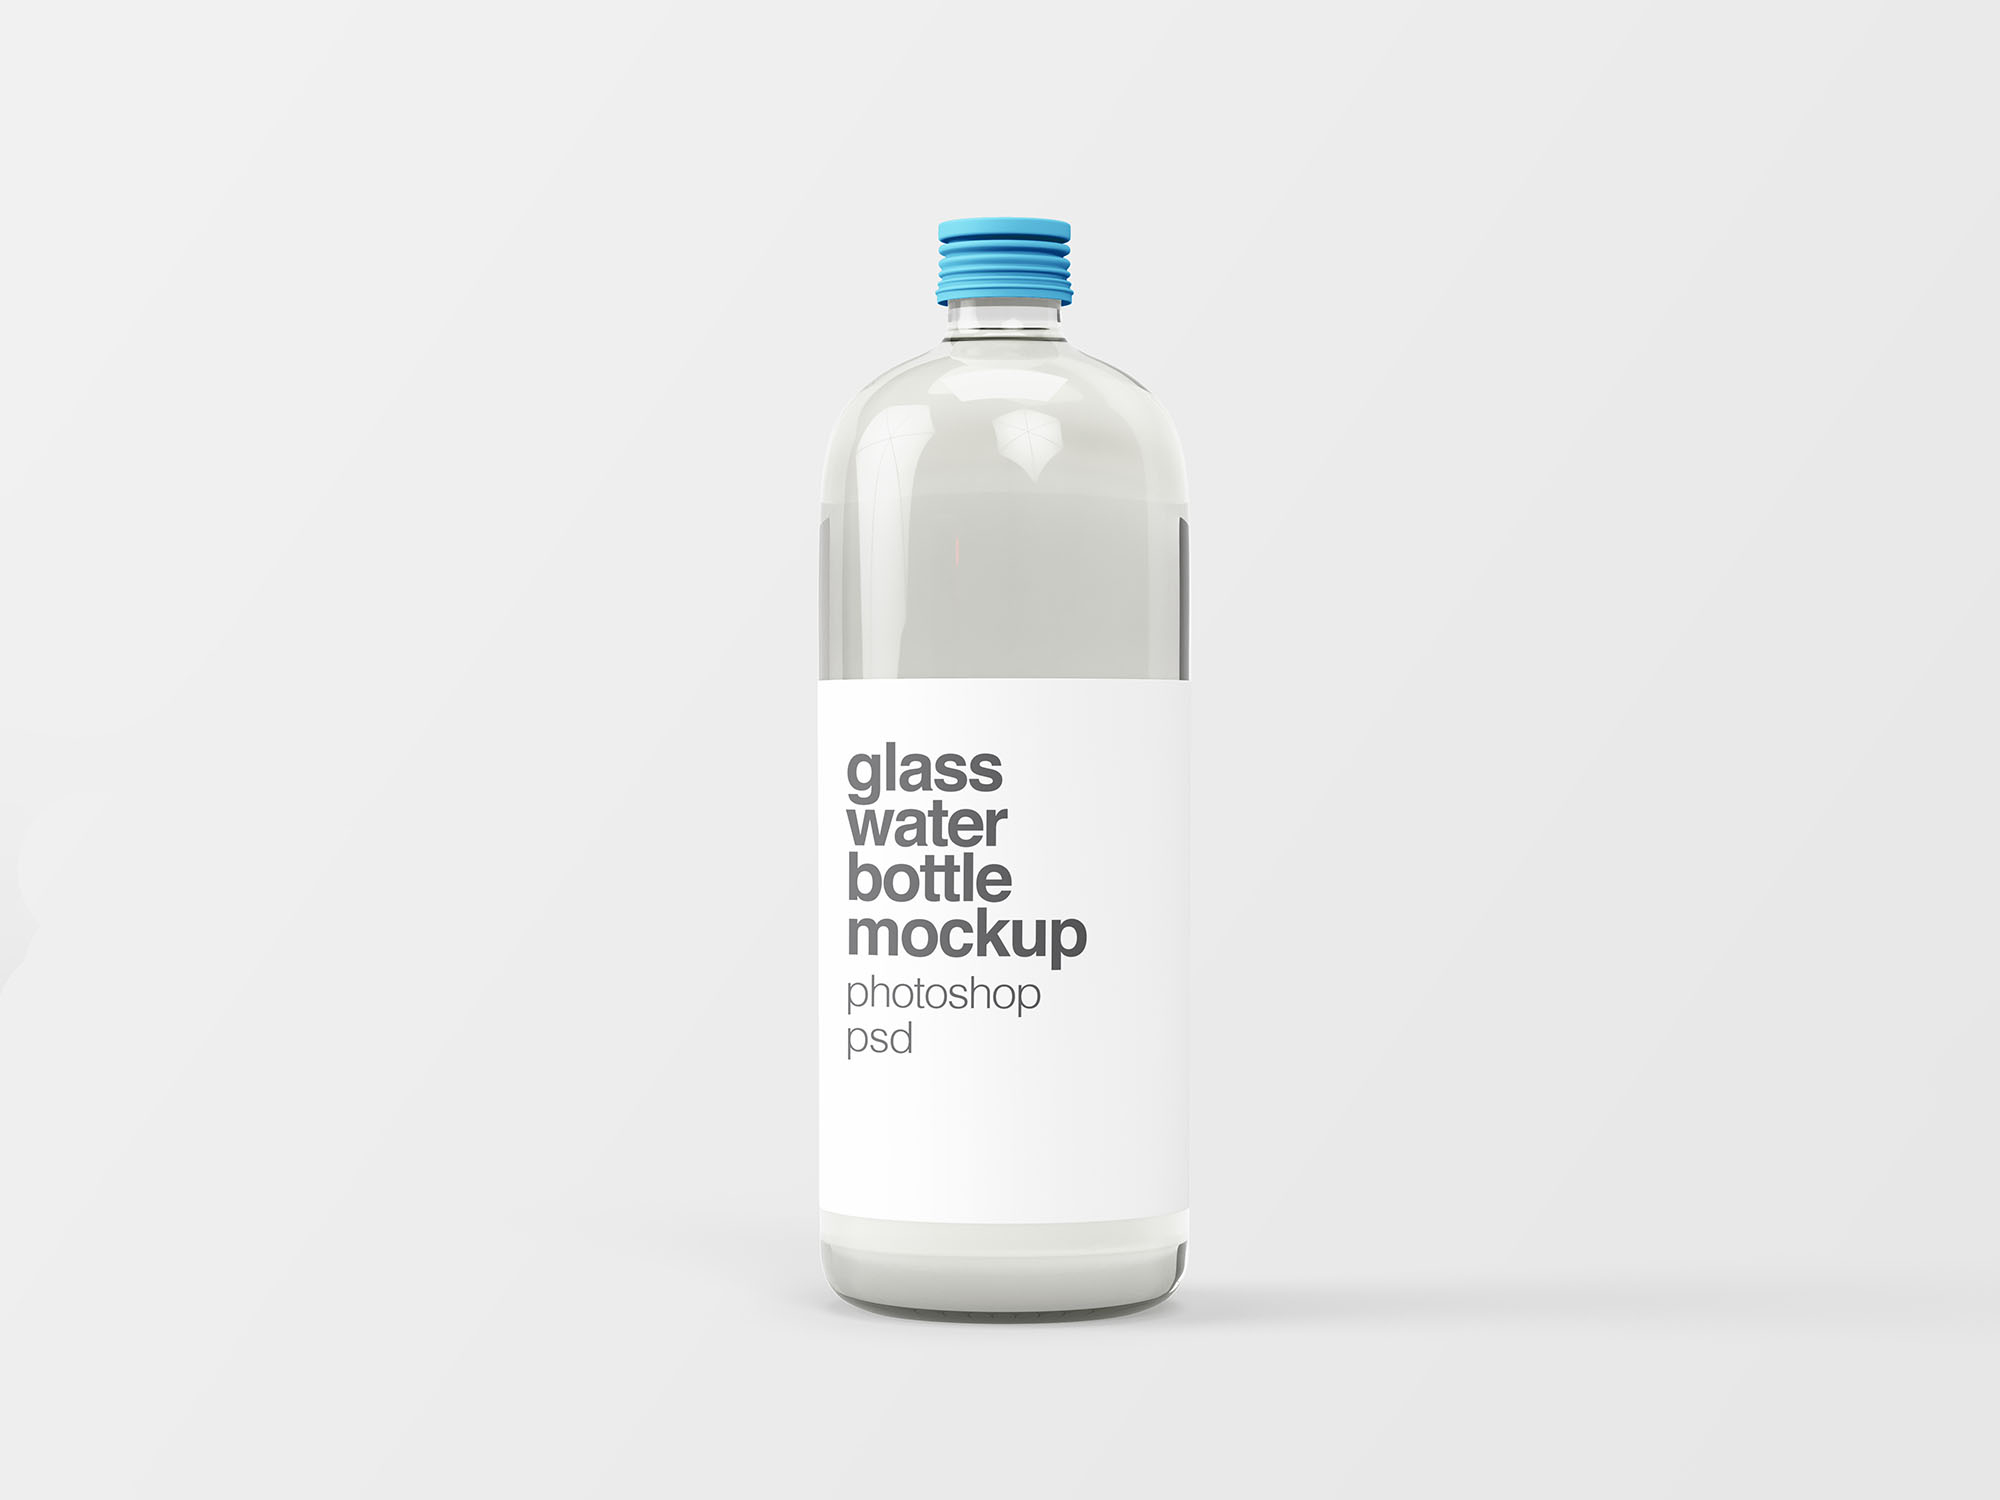 饮用水玻璃瓶外观设计图样机模板 Glass Water Bottle Mockup插图